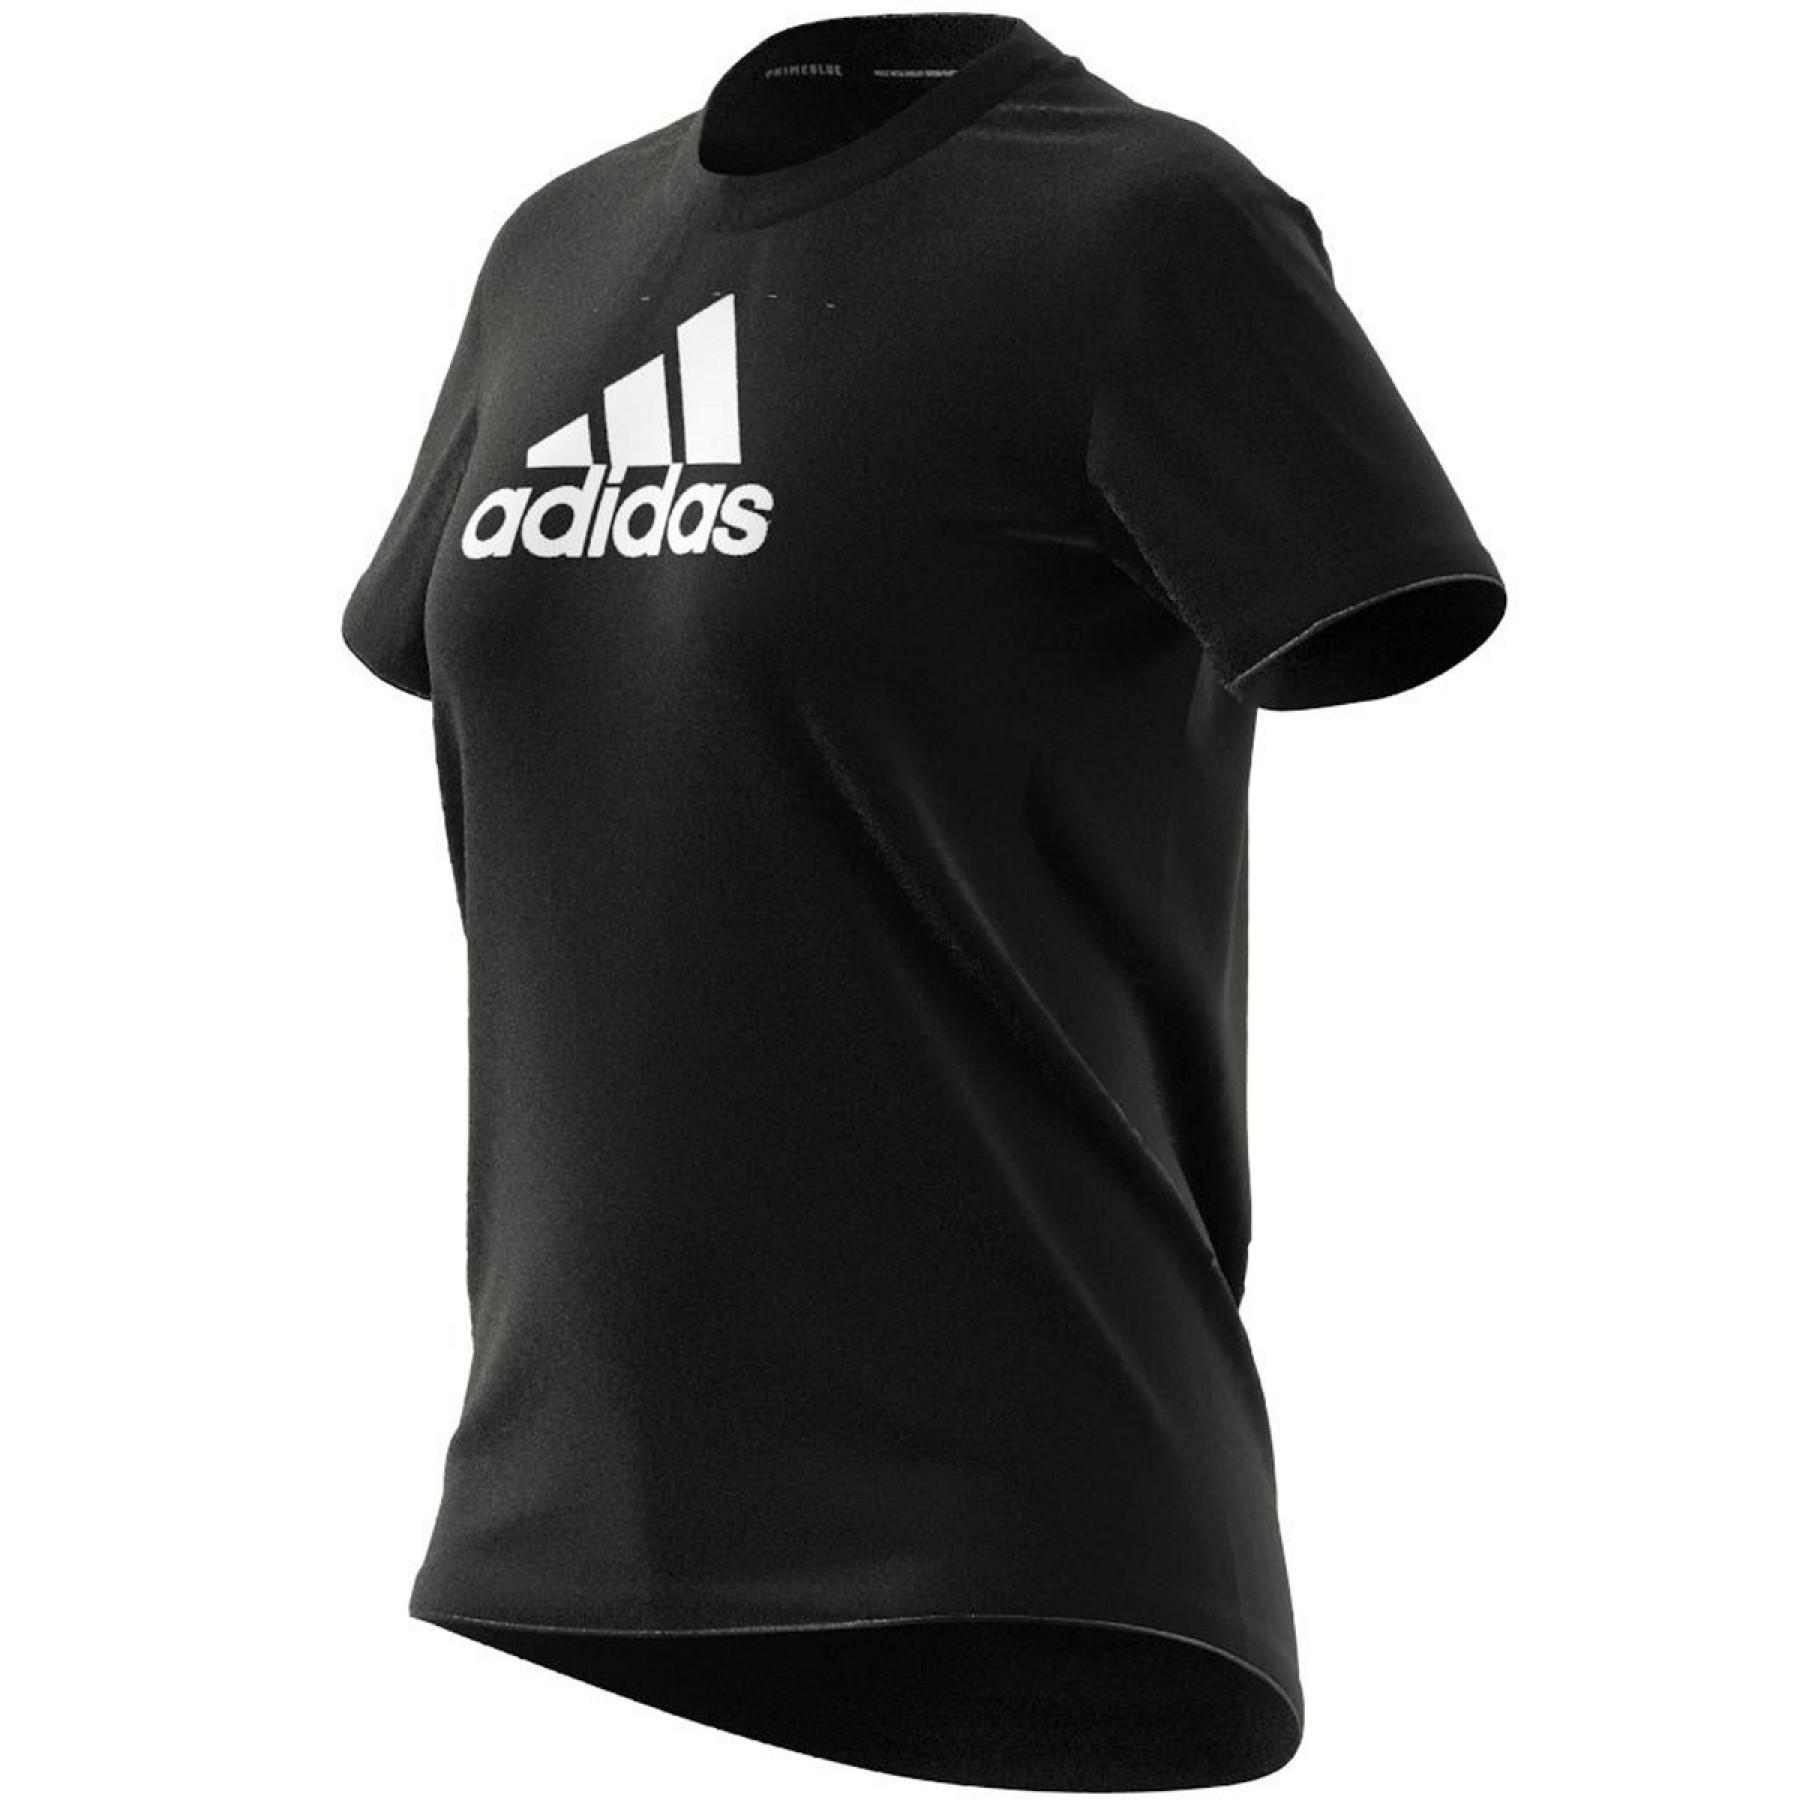 Dames-T-shirt adidas Primeblue Designed 2 Move Logo Sport